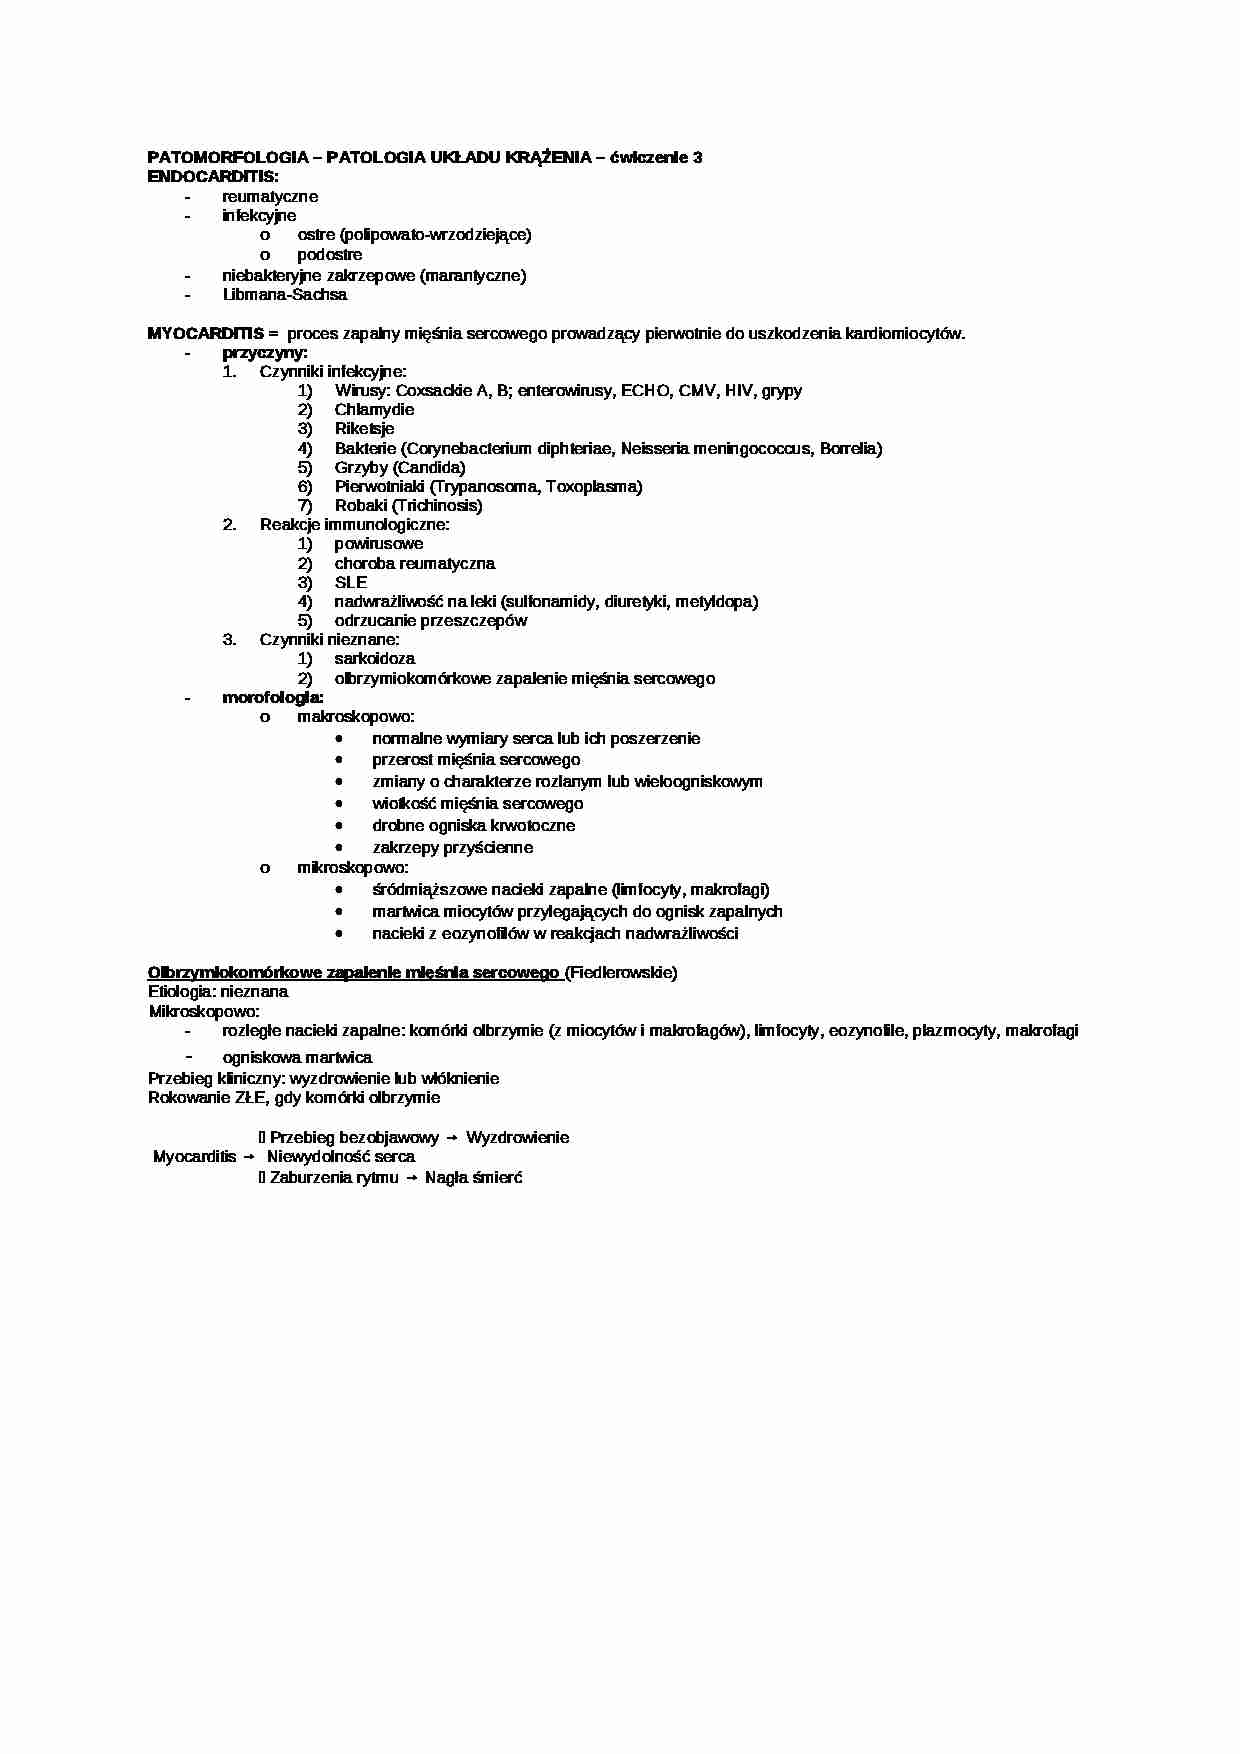 Patologia układu krążenia - strona 1